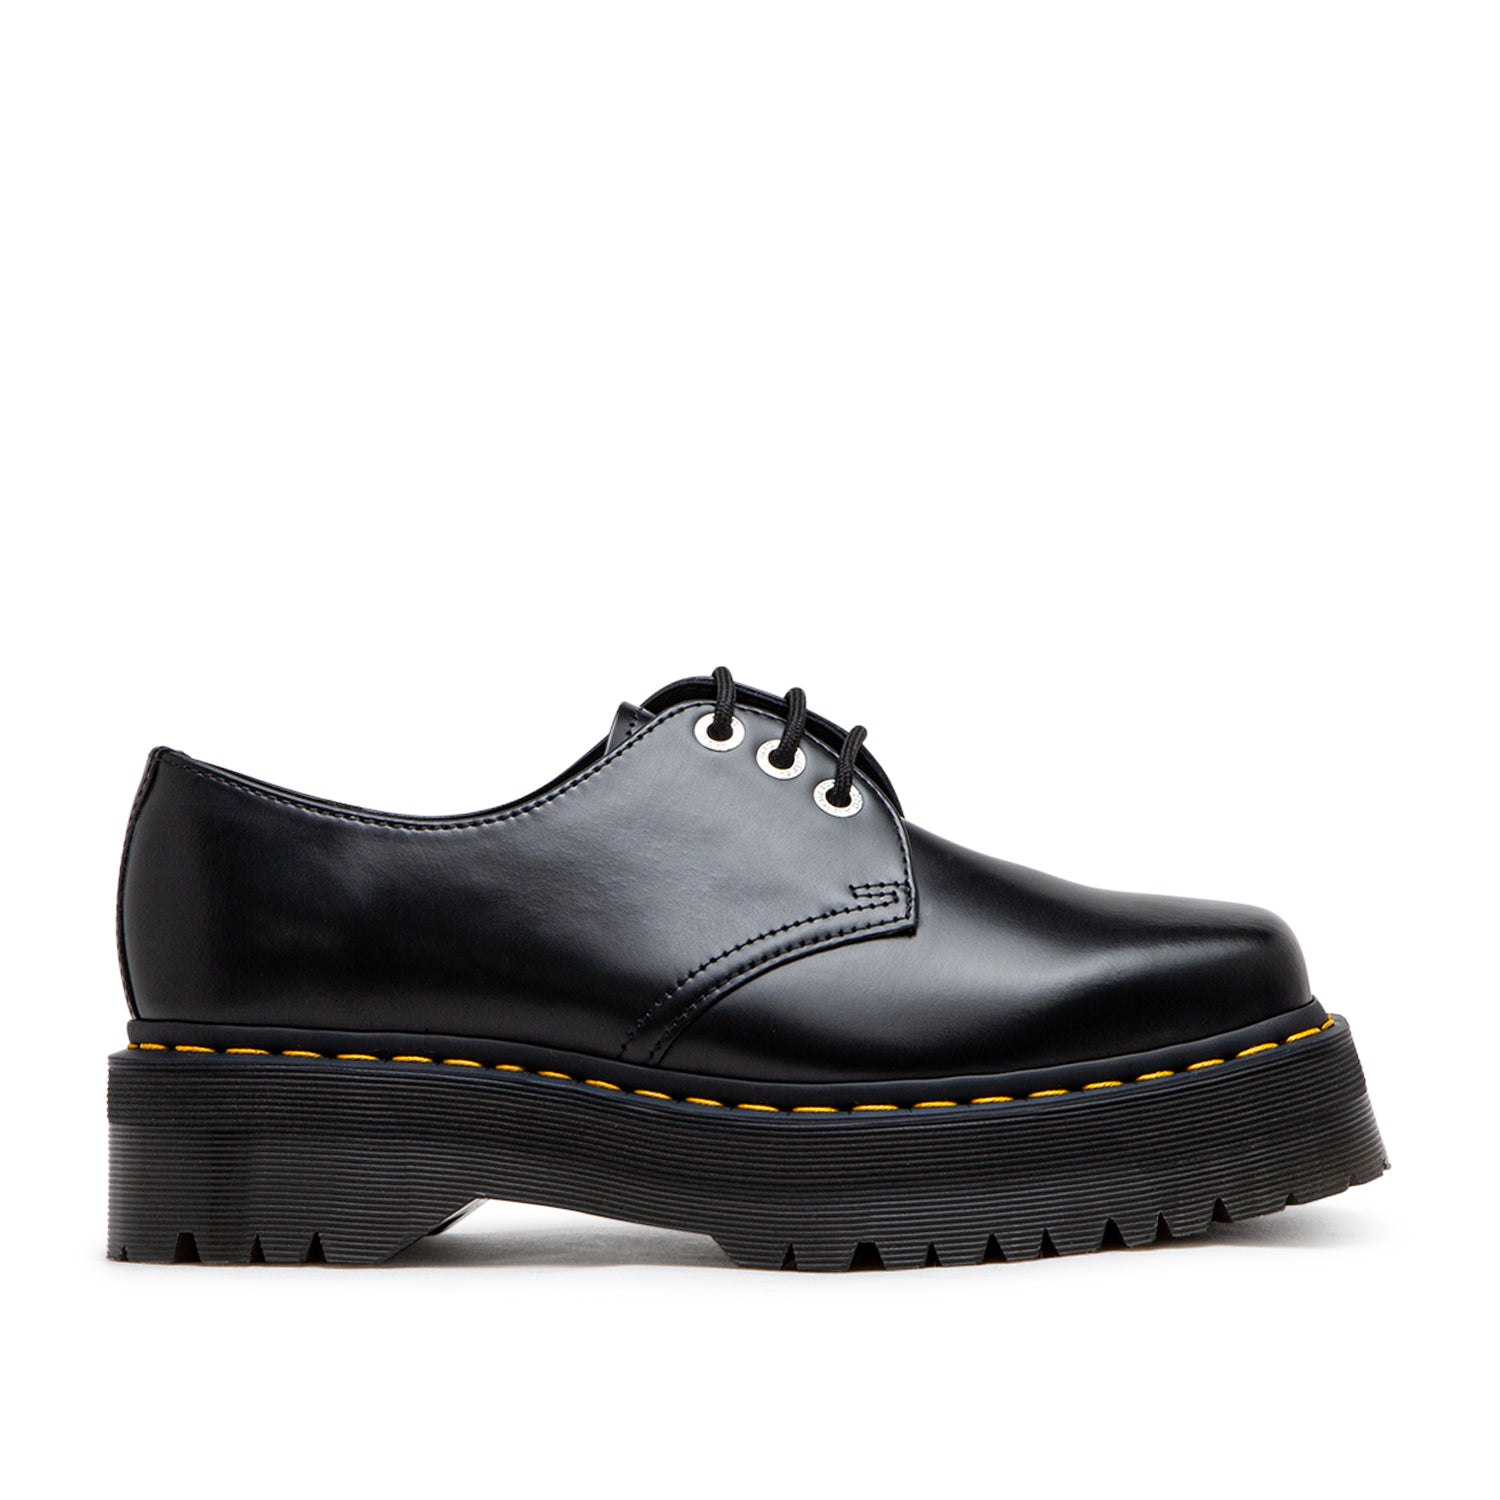 Dr. Martens 1461 Quad Squared Toe Leather Shoes (Schwarz)  - Cheap Juzsports Jordan Outlet